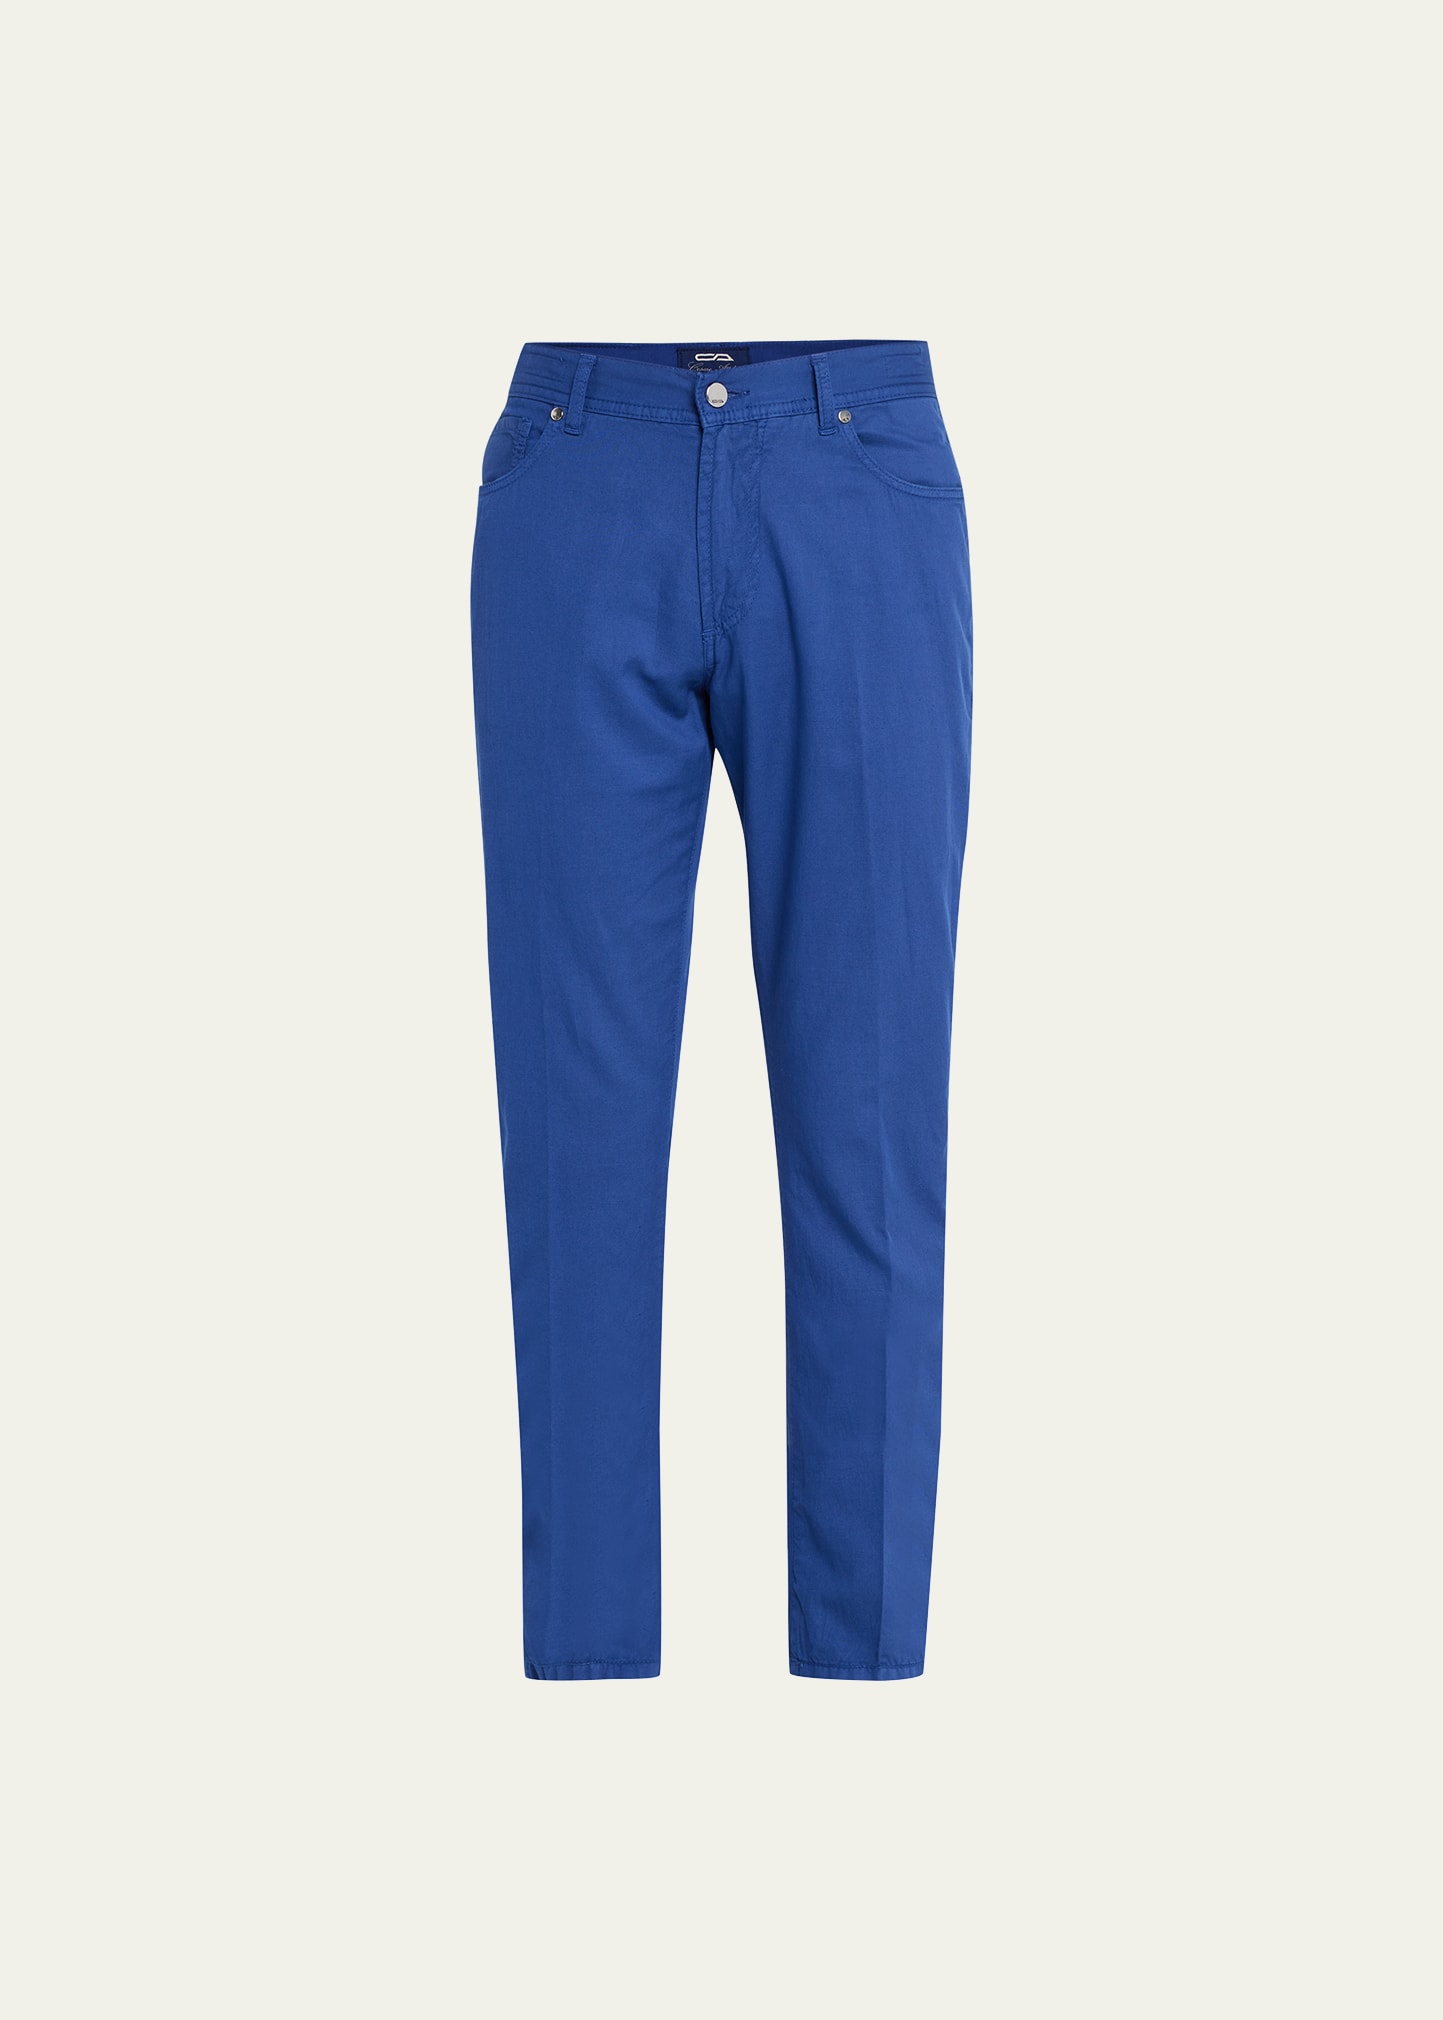 Cesare Attolini Men's Cotton-Linen 5-Pocket Pants